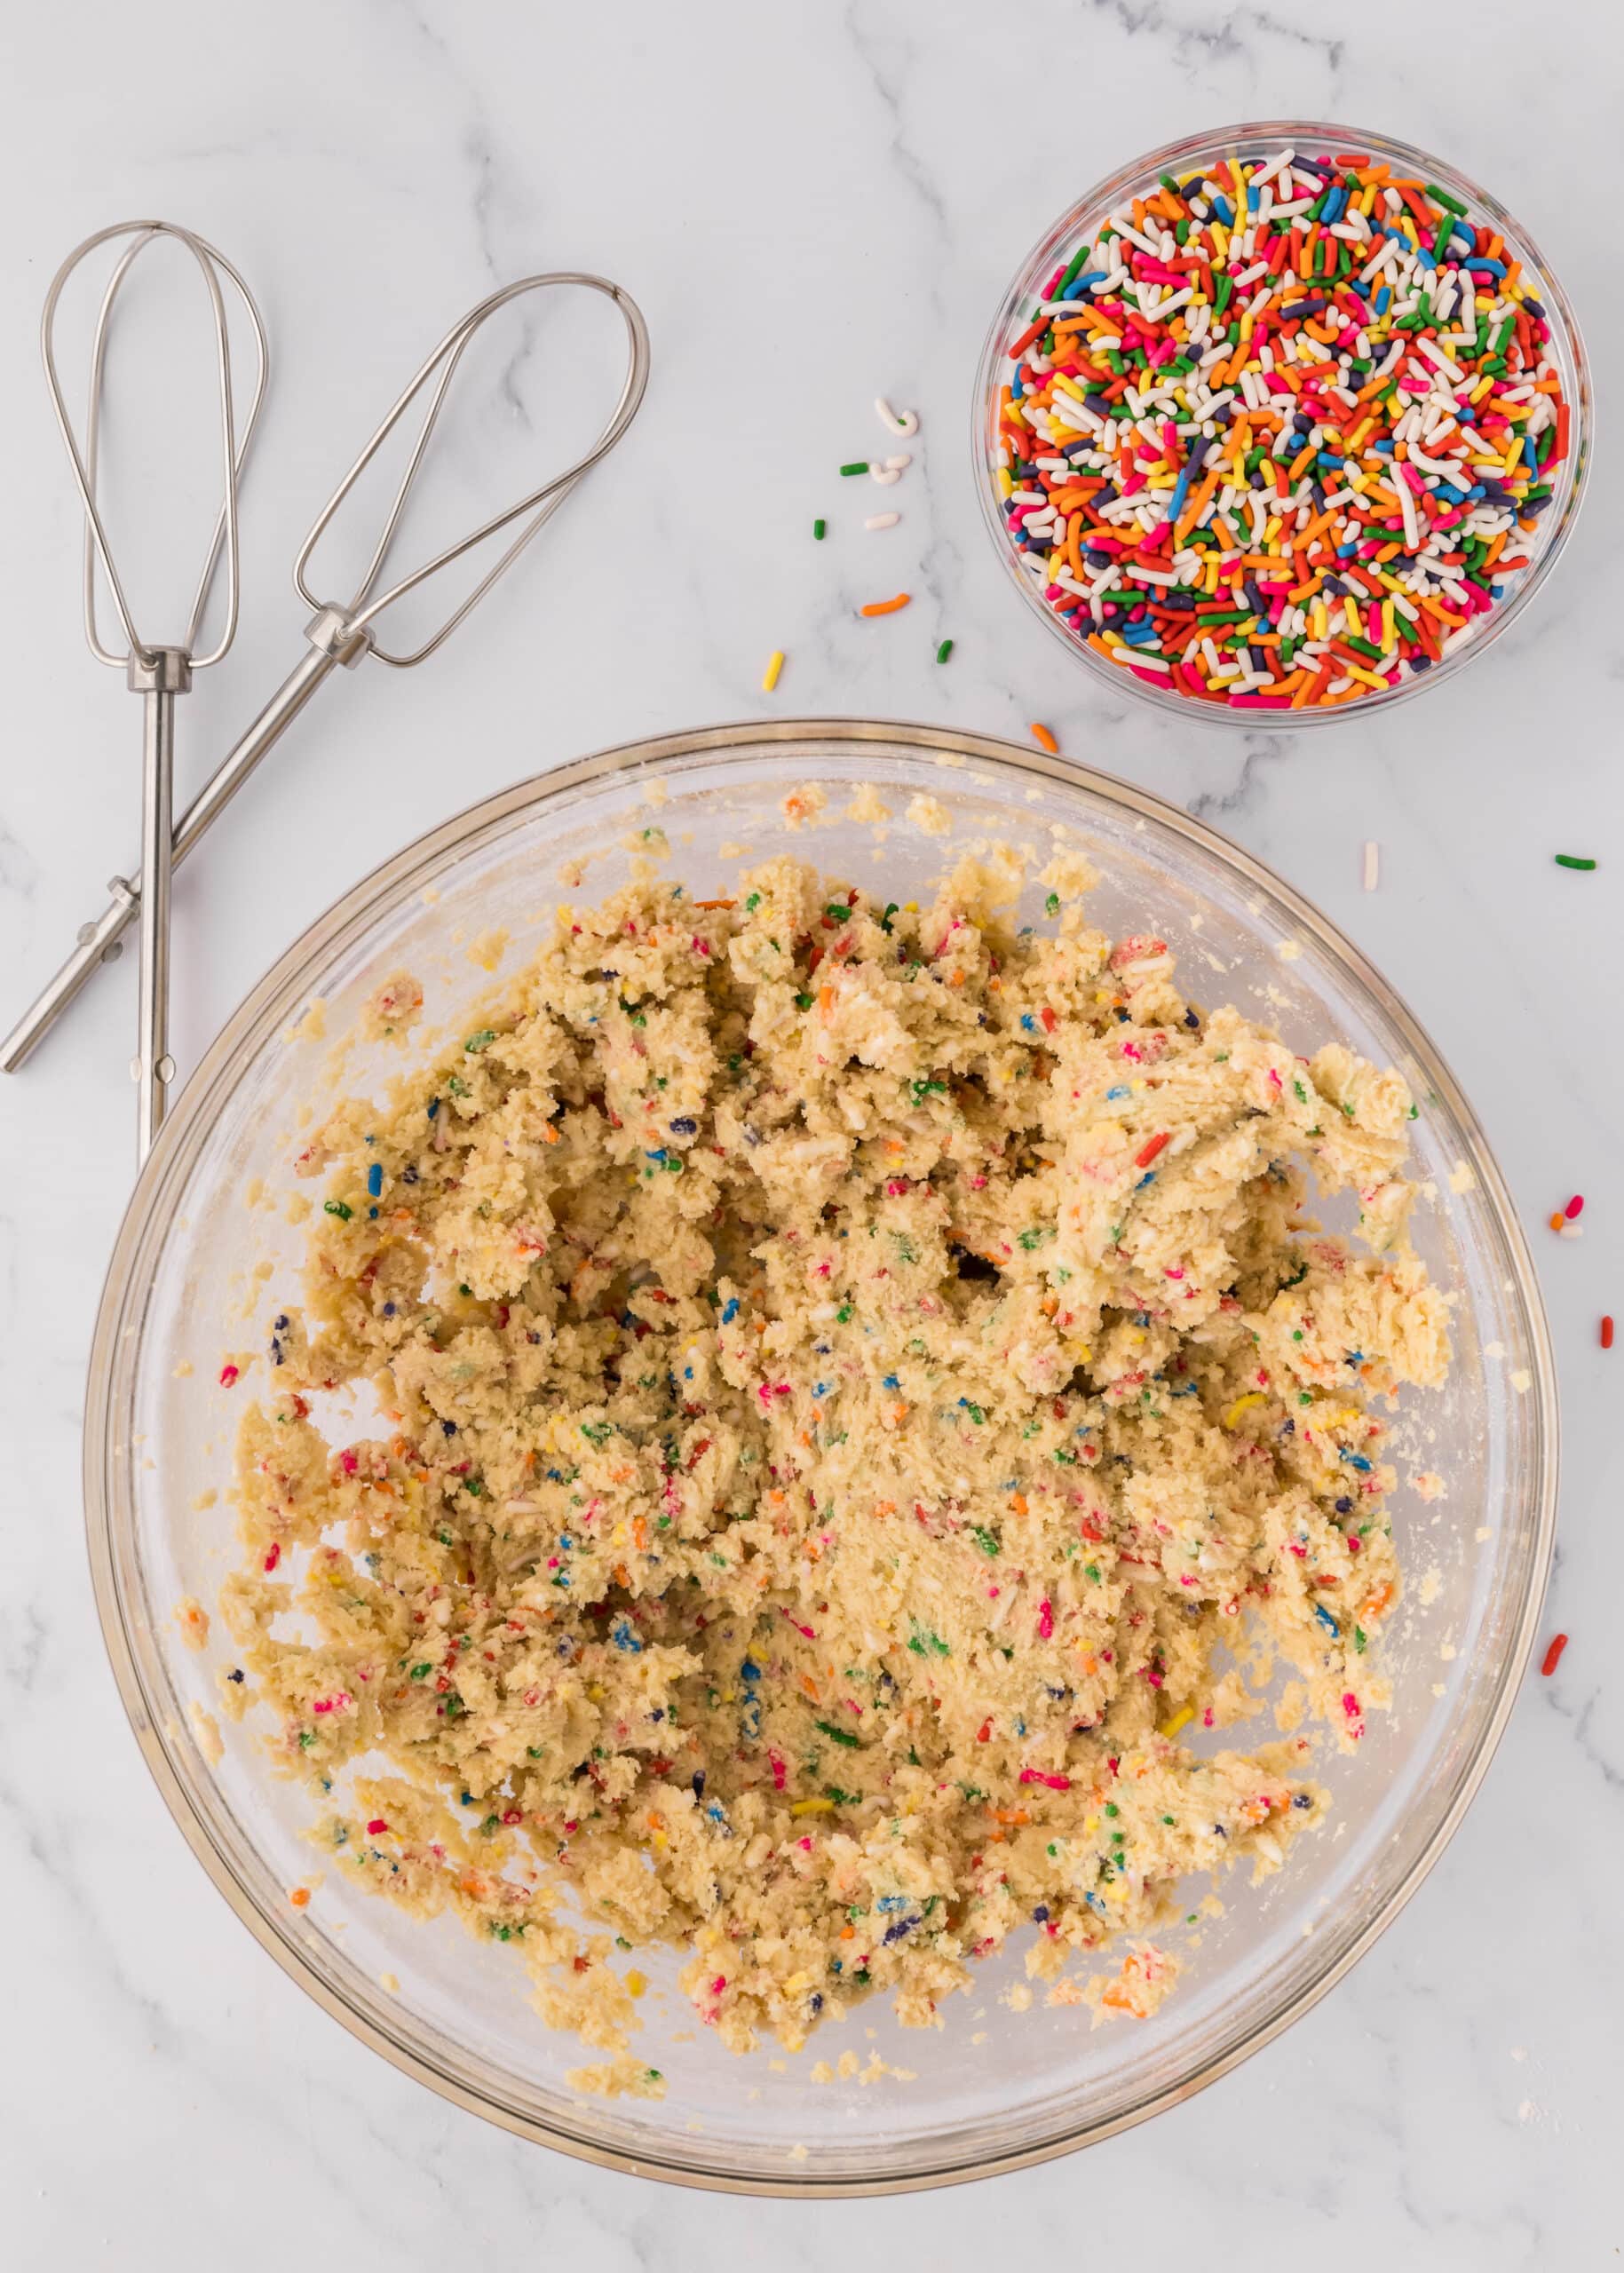 how to make a cookie cake recipe (Funfetti)